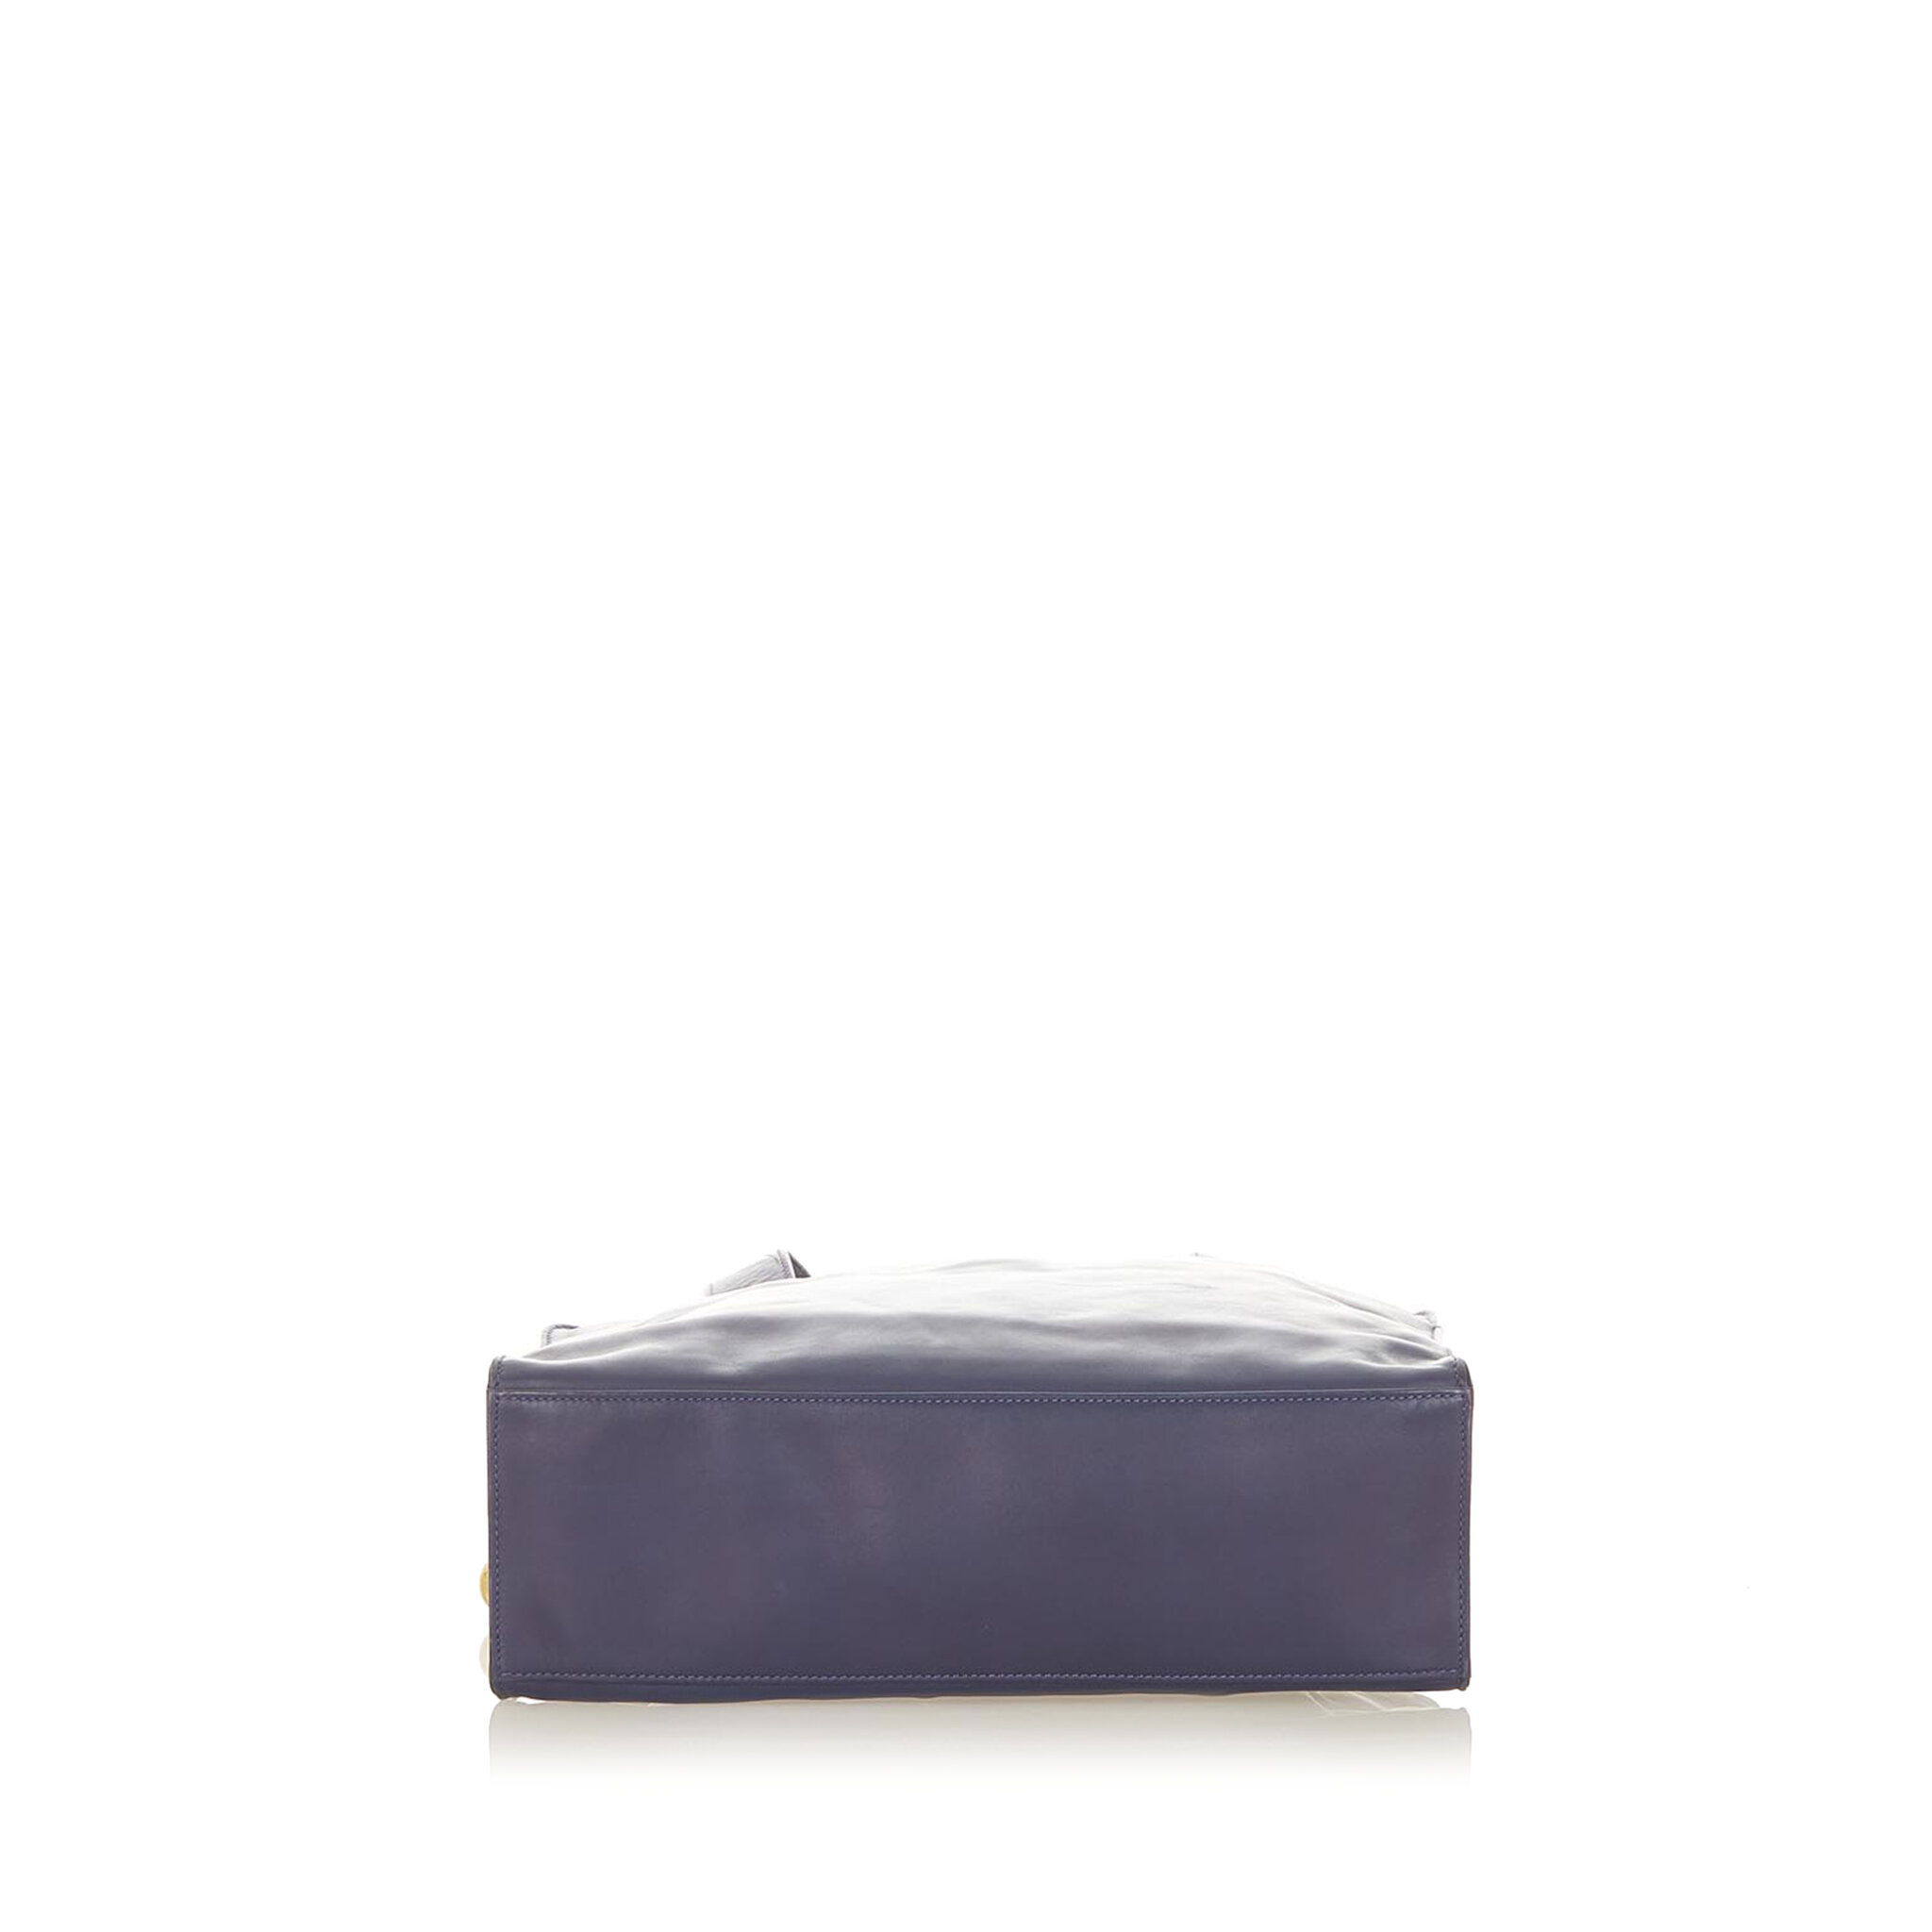 Celine Leather Tote Bag, blue